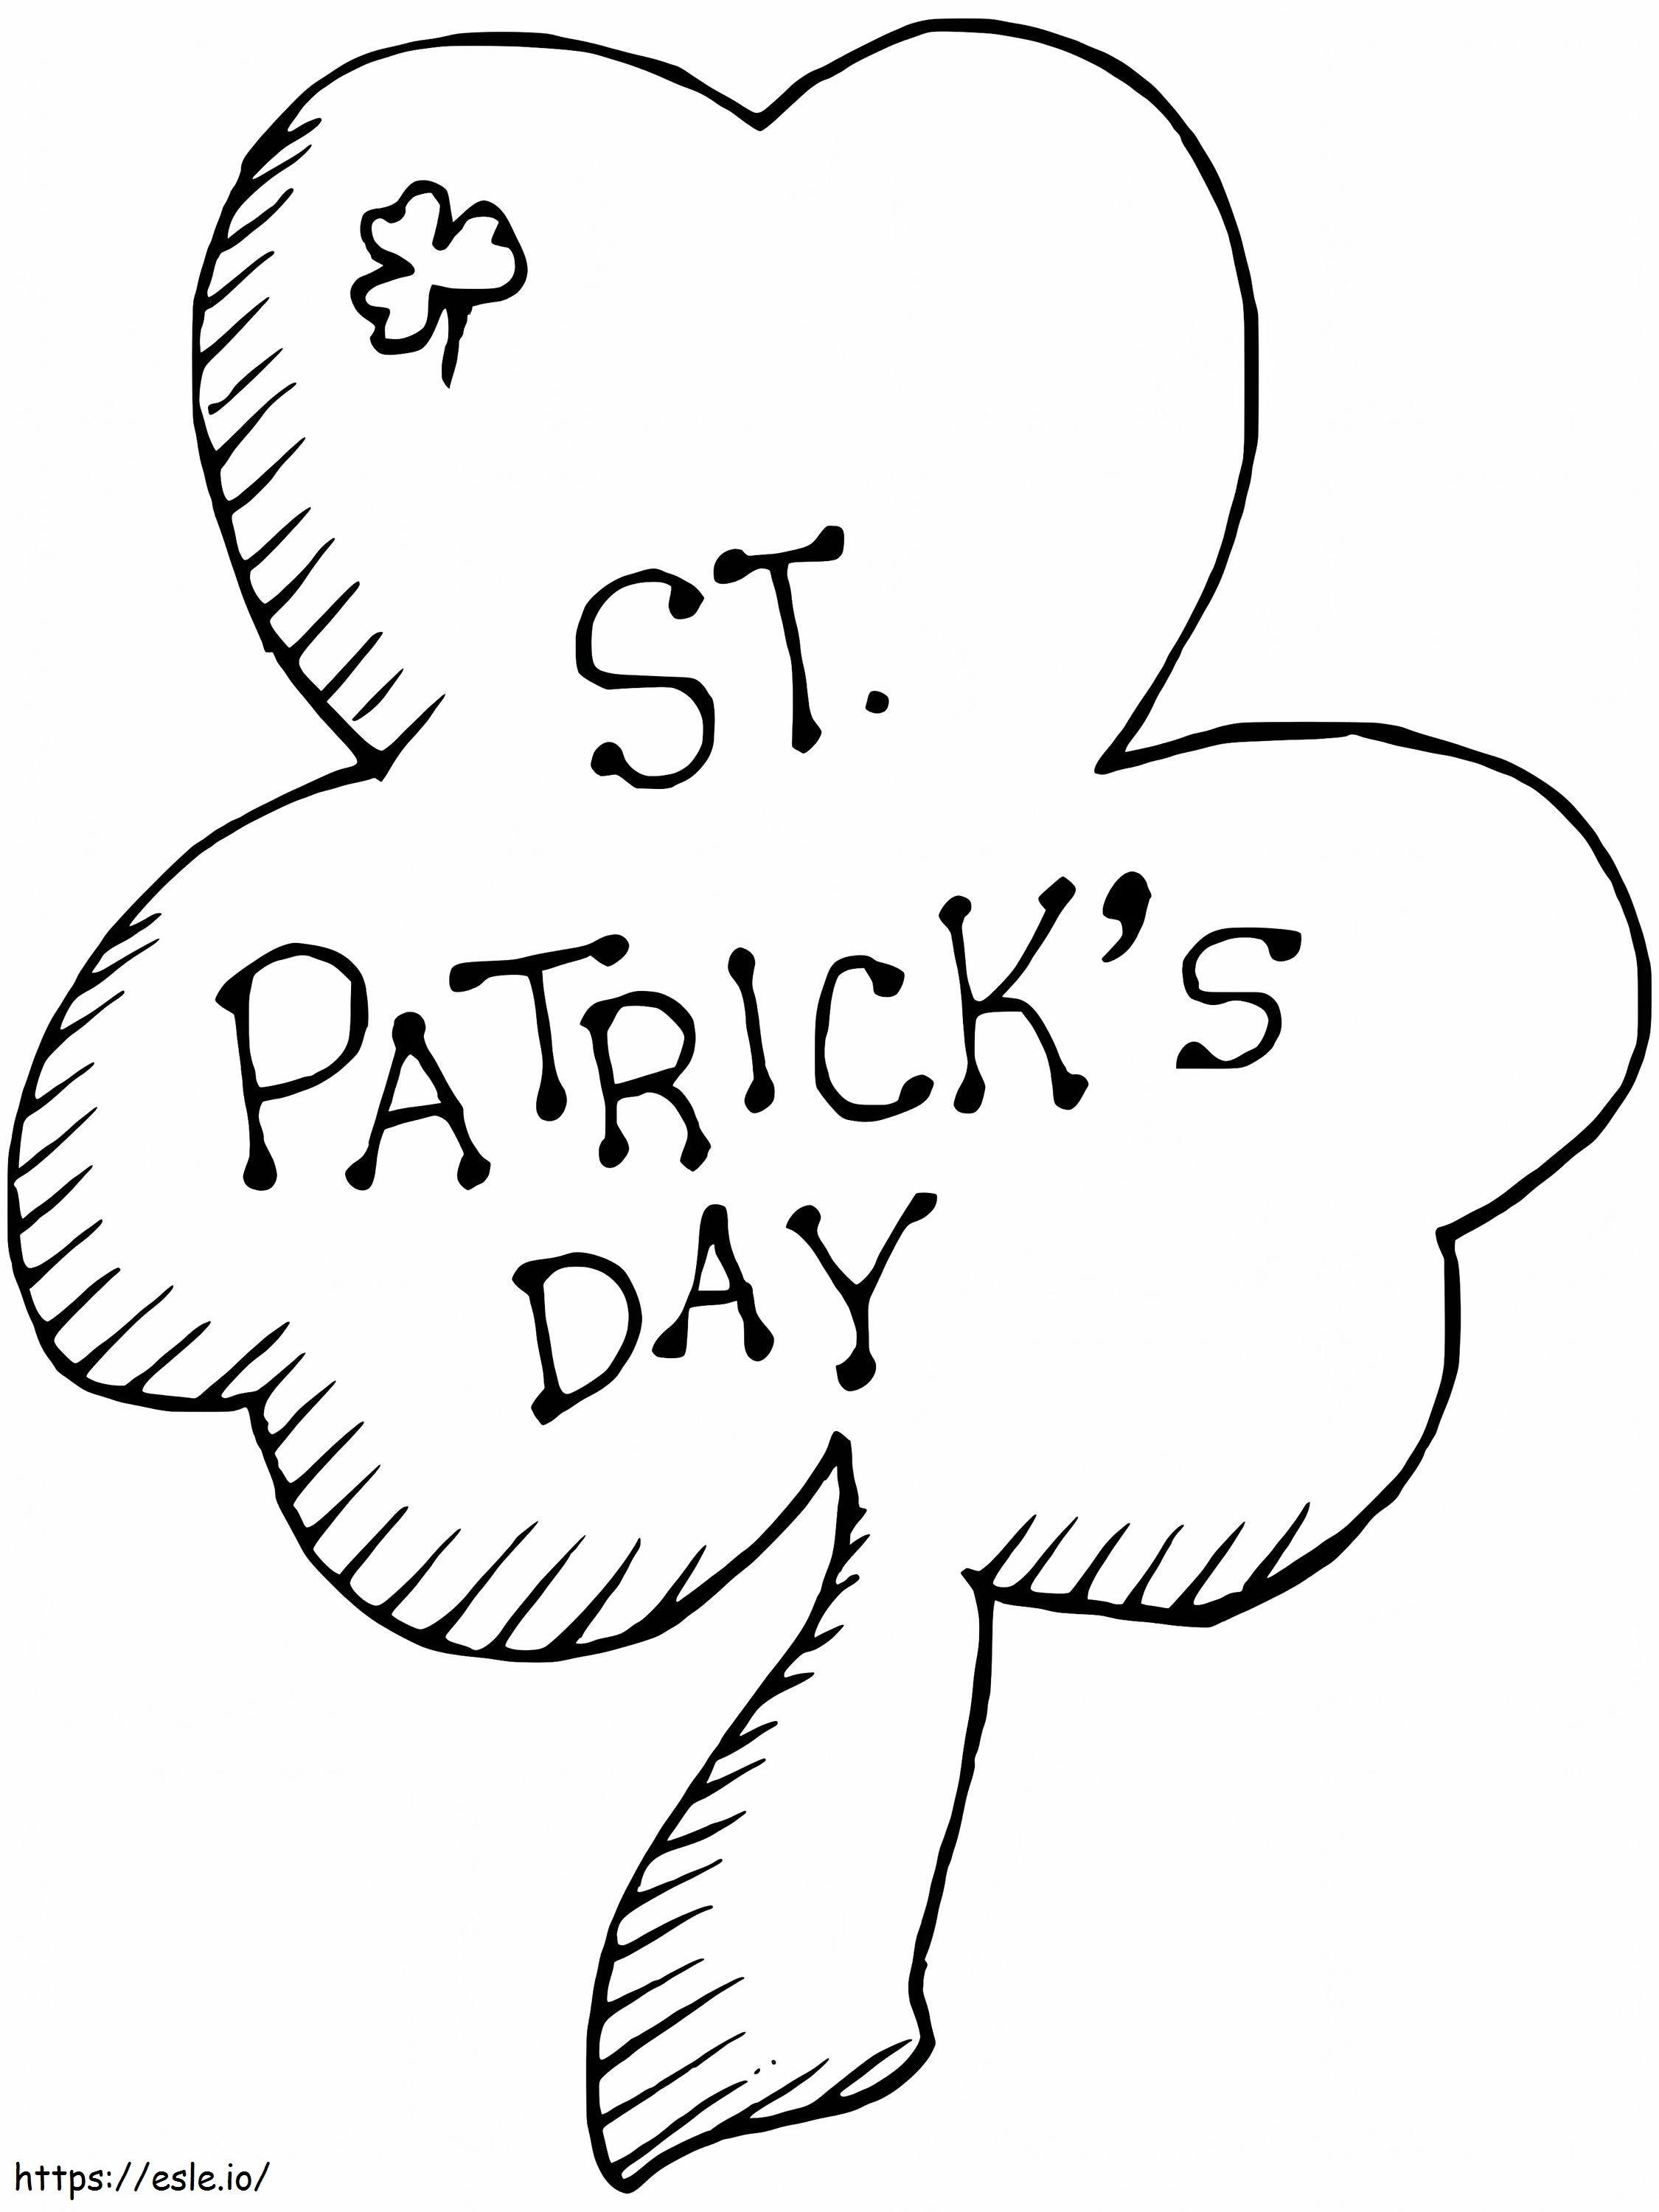 Kostenloses Kleeblatt zum St. Patricks Day ausmalbilder